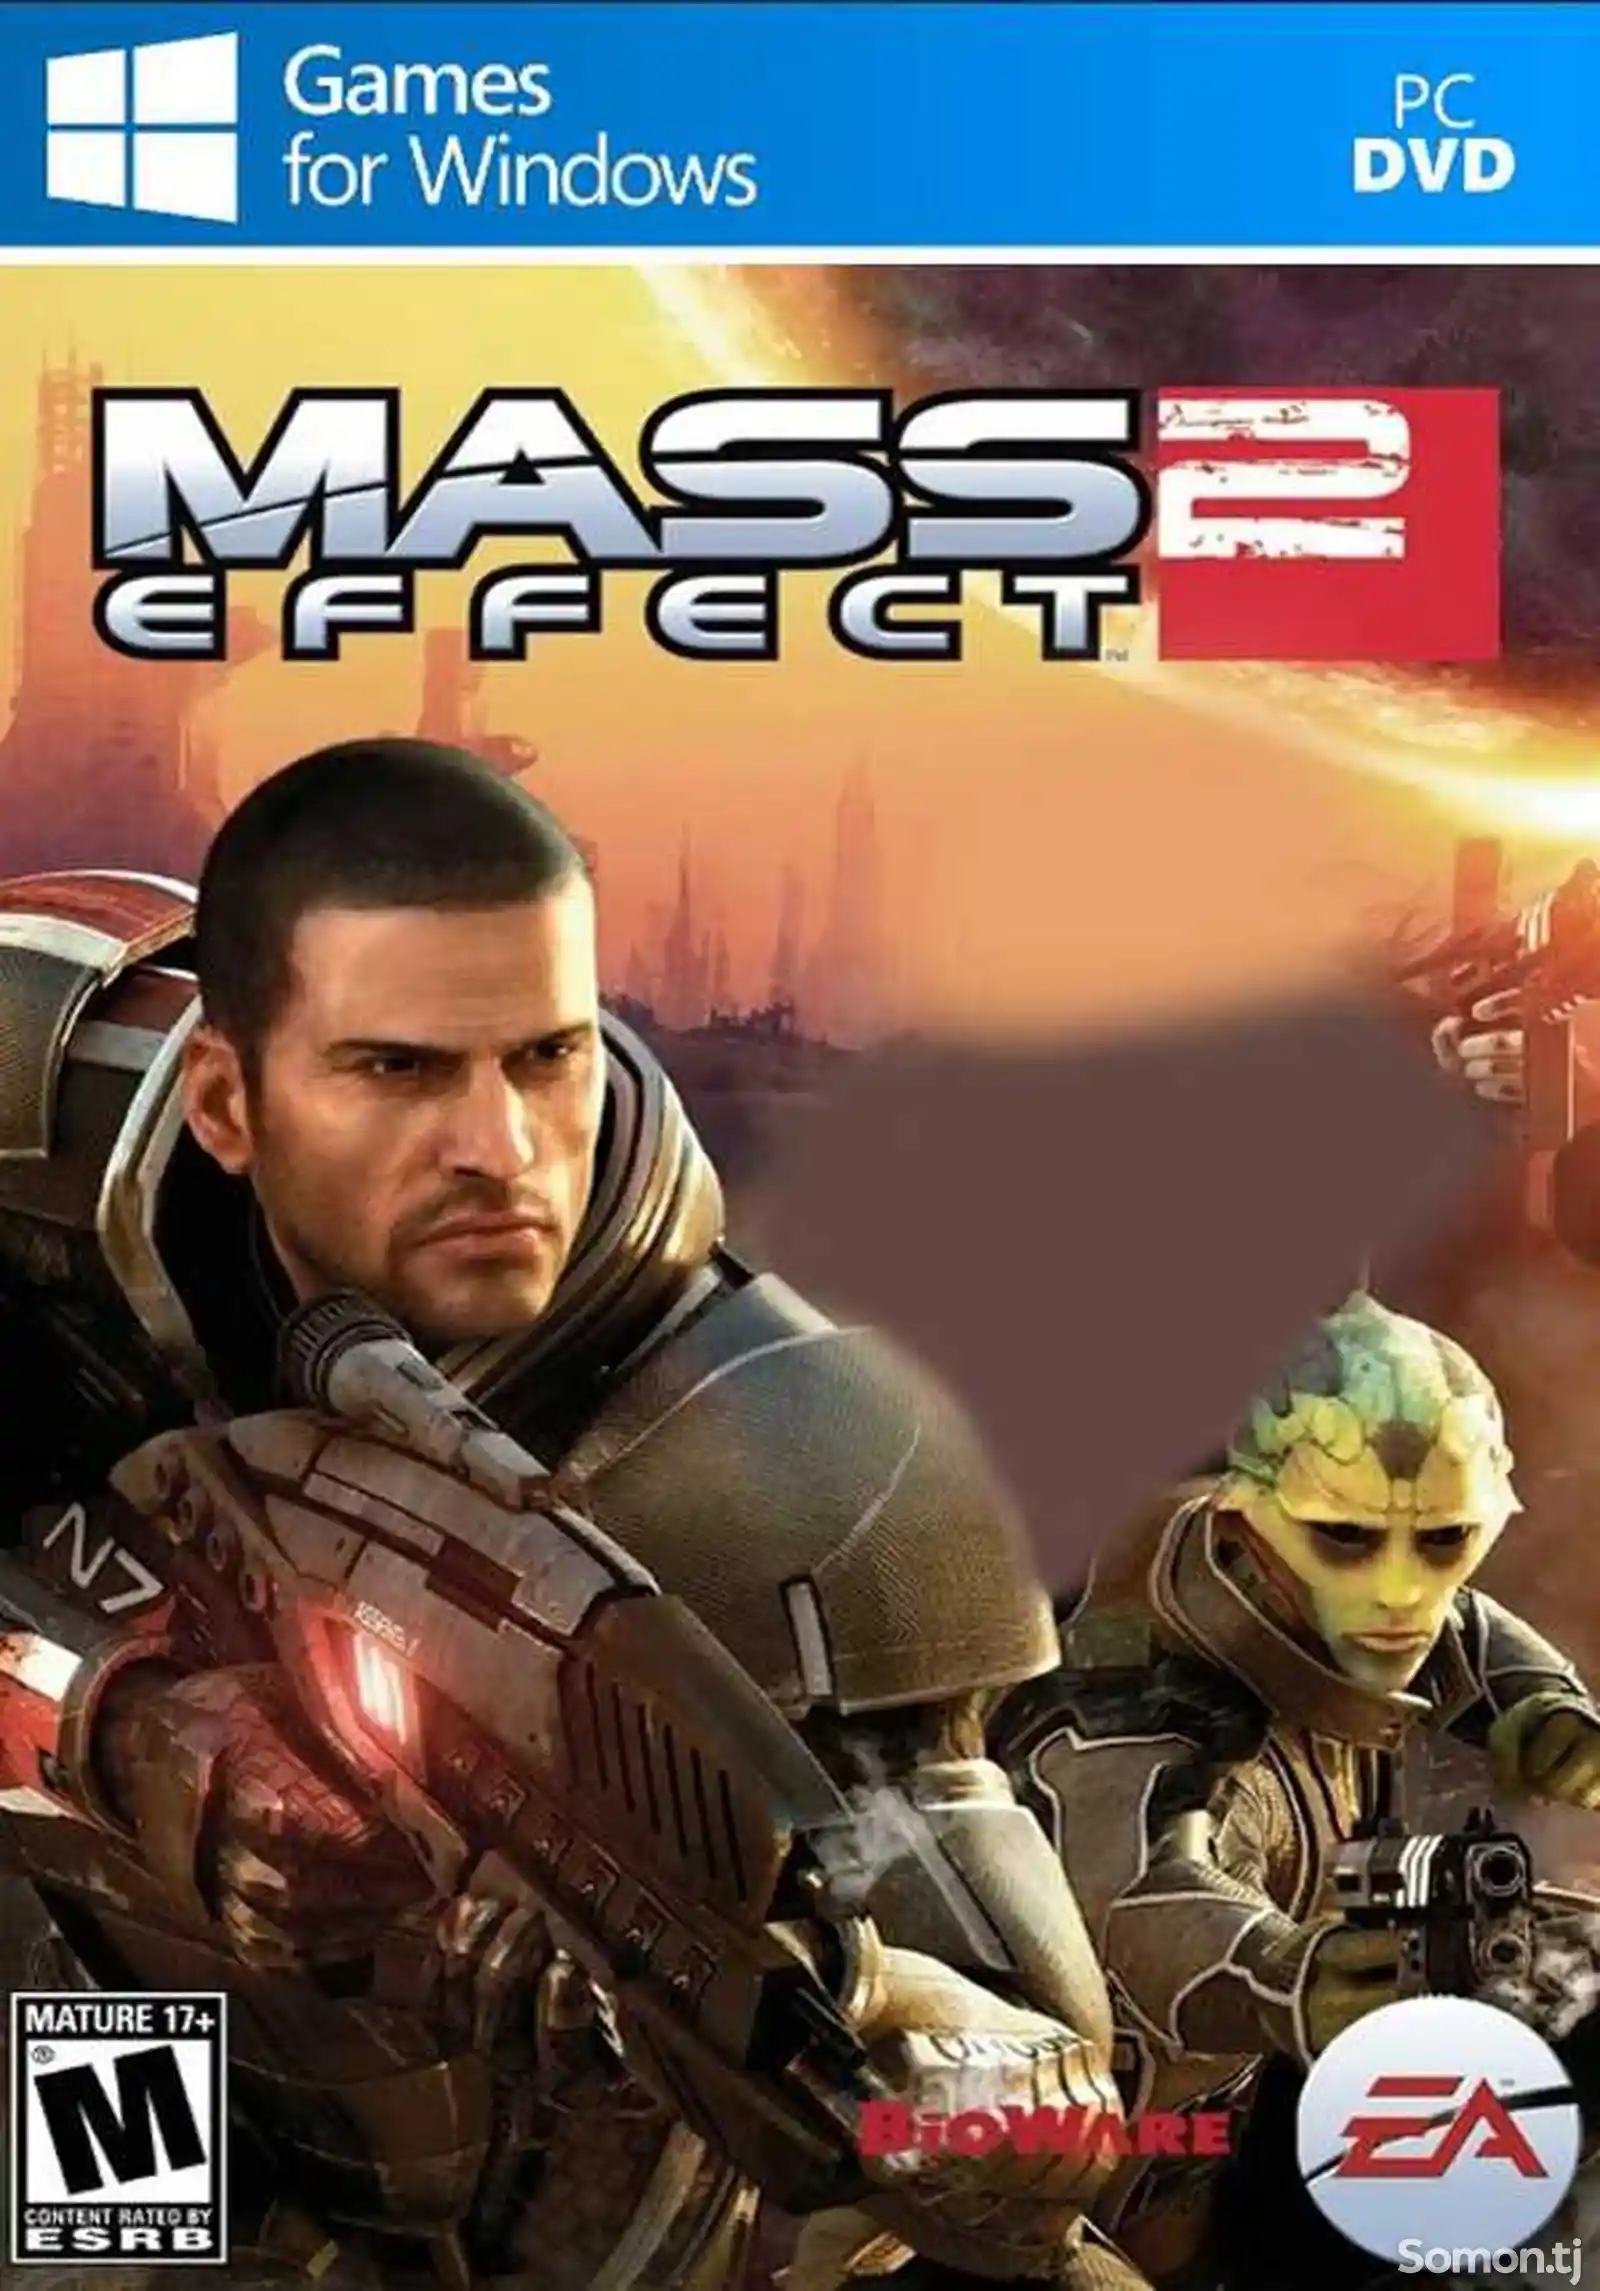 Игра Mass effect 2 для компьютера-пк-pc-1